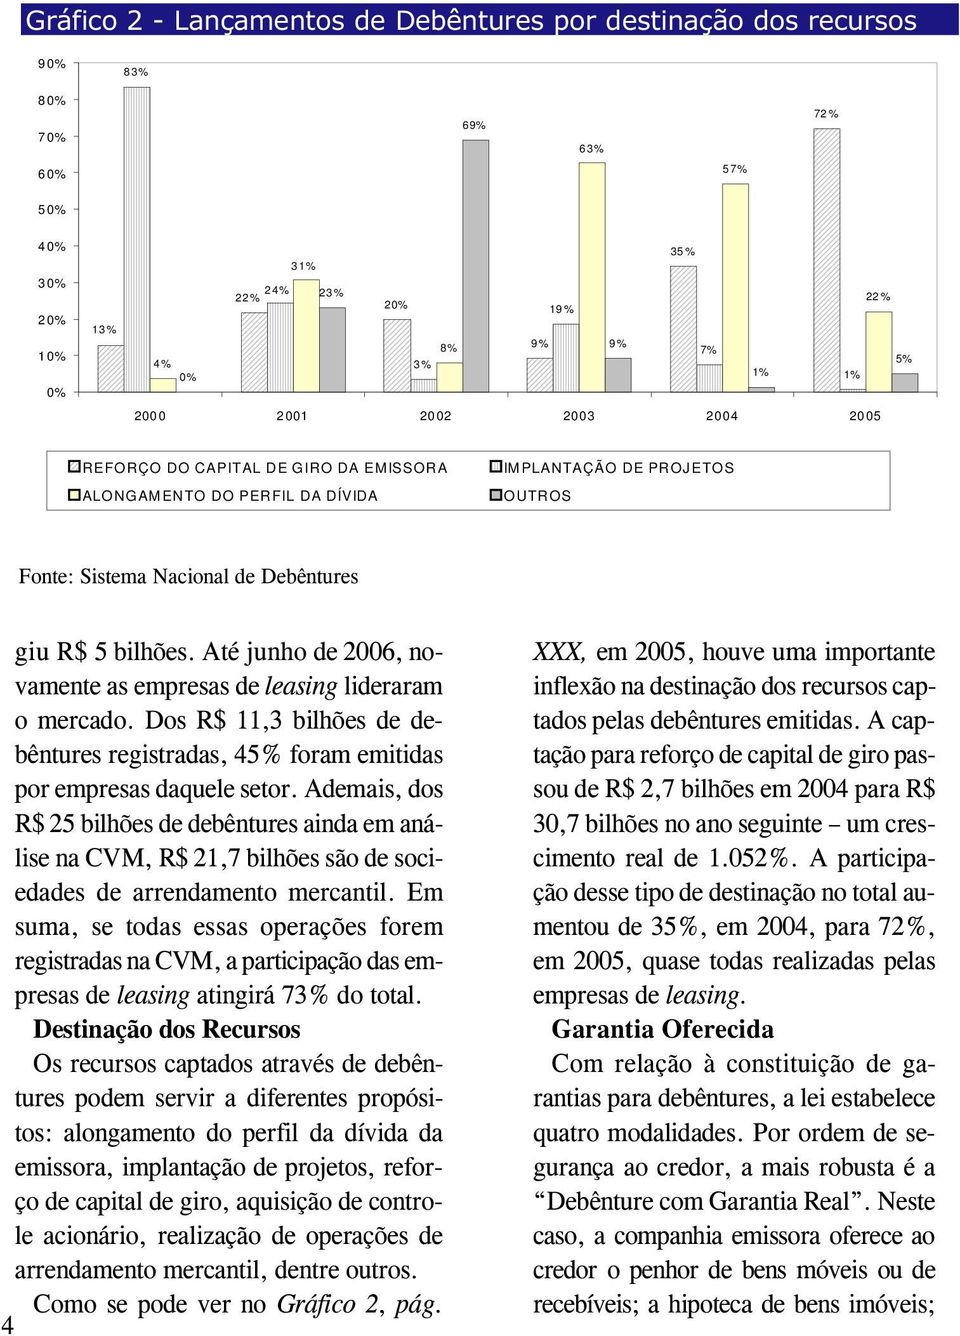 Até junho de 2006, novamente as empresas de leasing lideraram o mercado. Dos R$ 11,3 bilhões de debêntures registradas, 45% foram emitidas por empresas daquele setor.